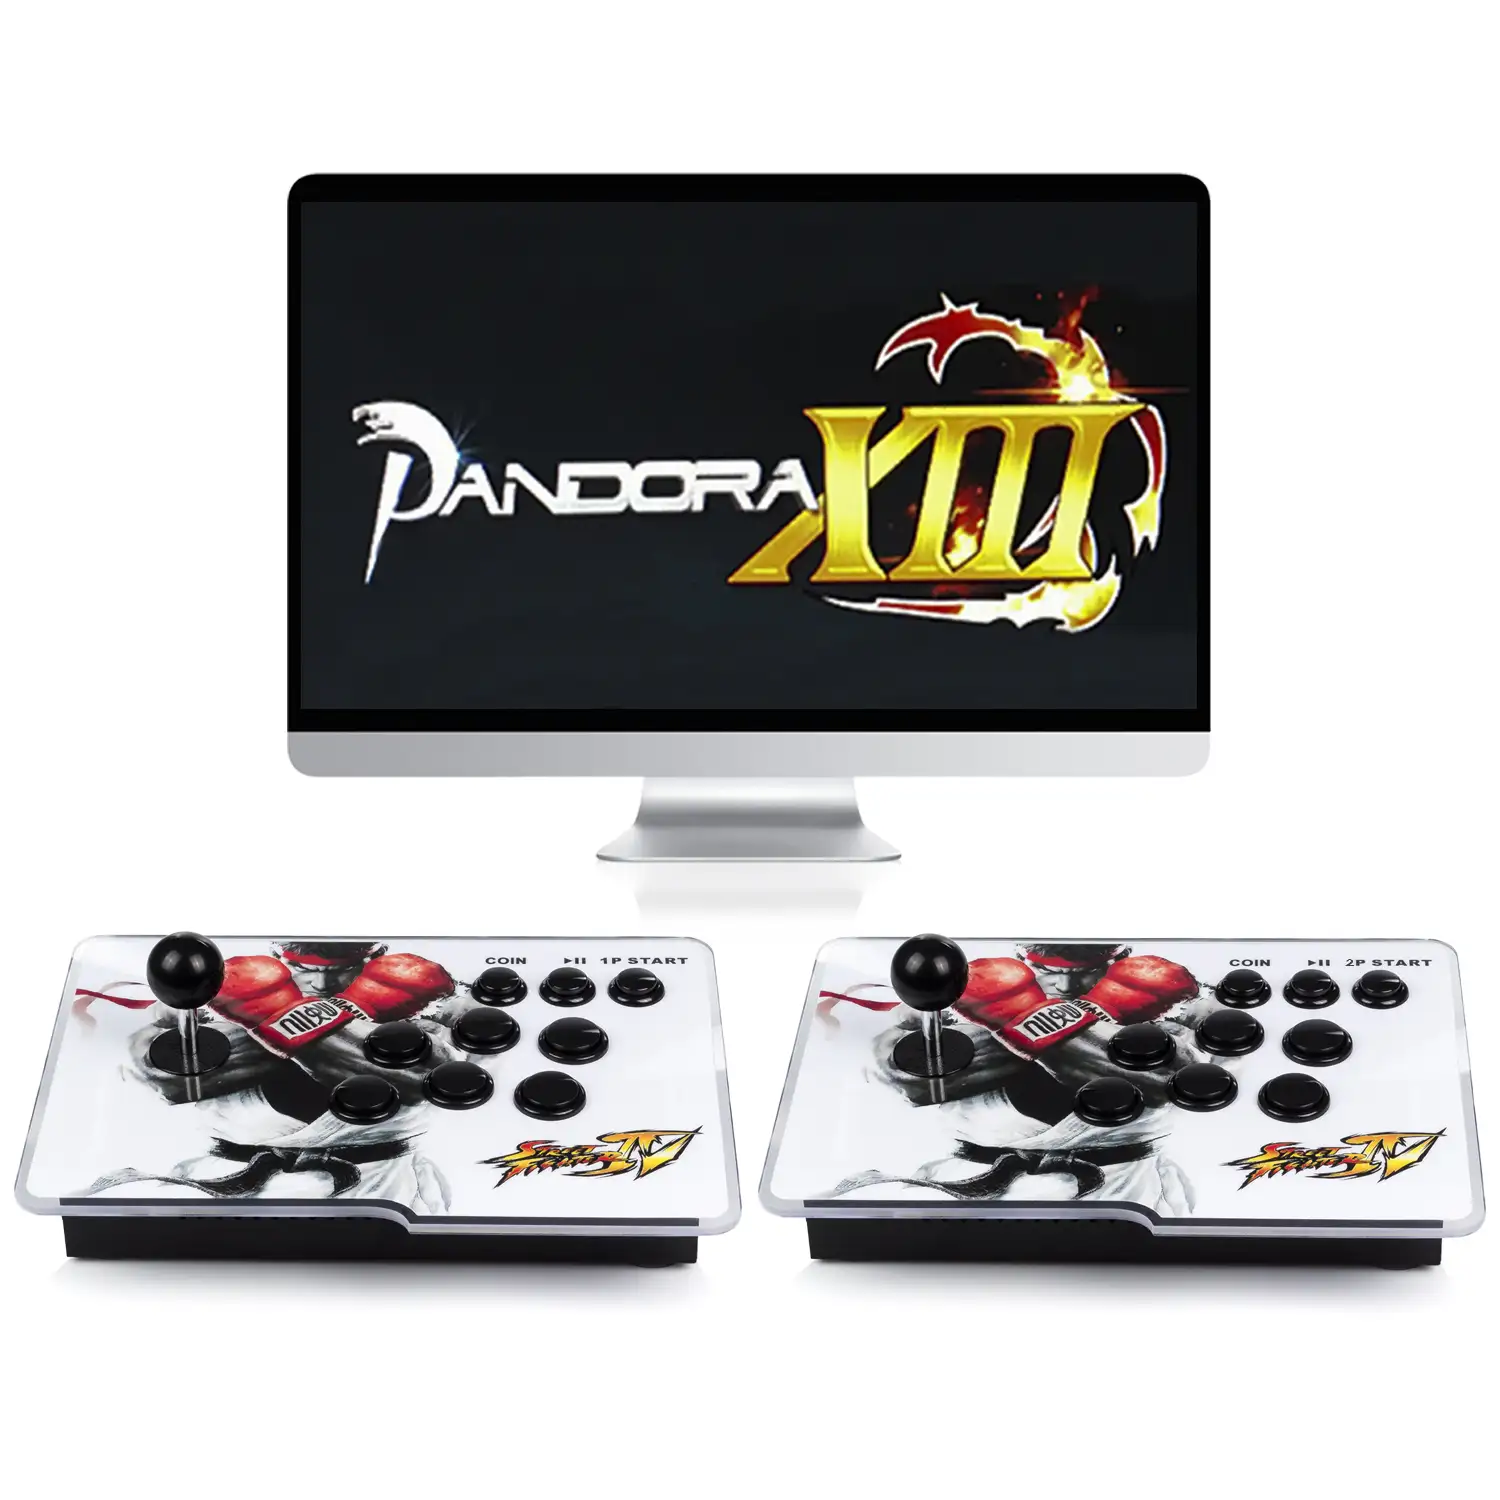 Pandoras Box 13, 2 joysticks, con 5568 juegos clásicos, en 2D y 3D. Conexión USB/HDMI/VGA. Emulador consola arcade clásica.